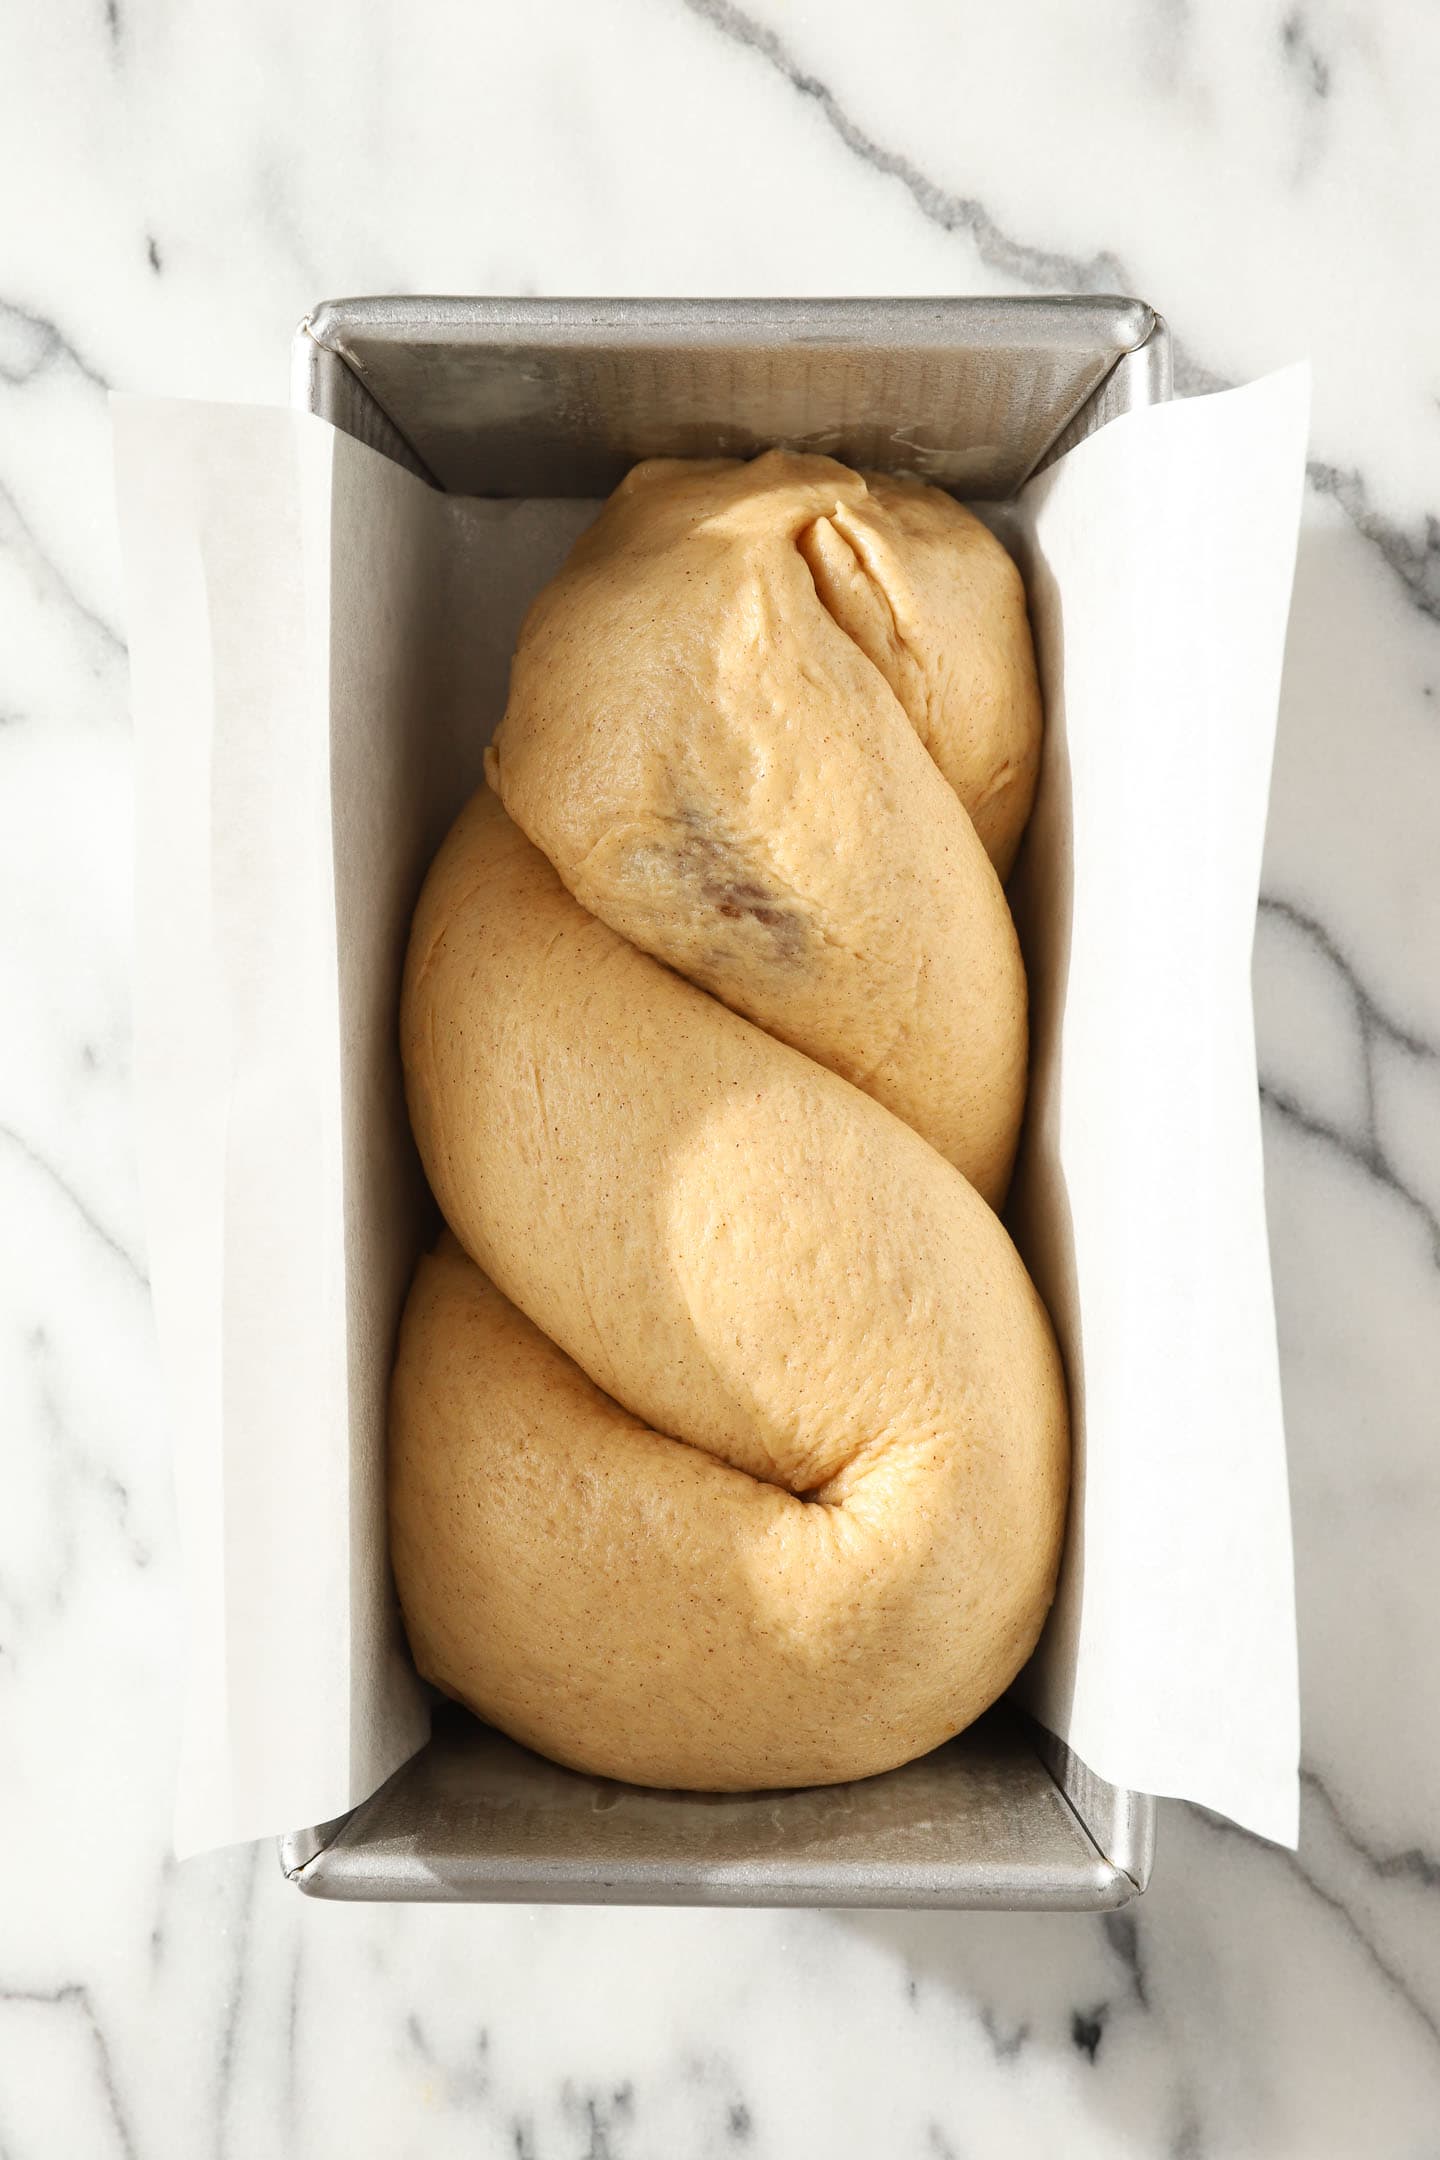 shaped, pre-risen loaf of apple babka